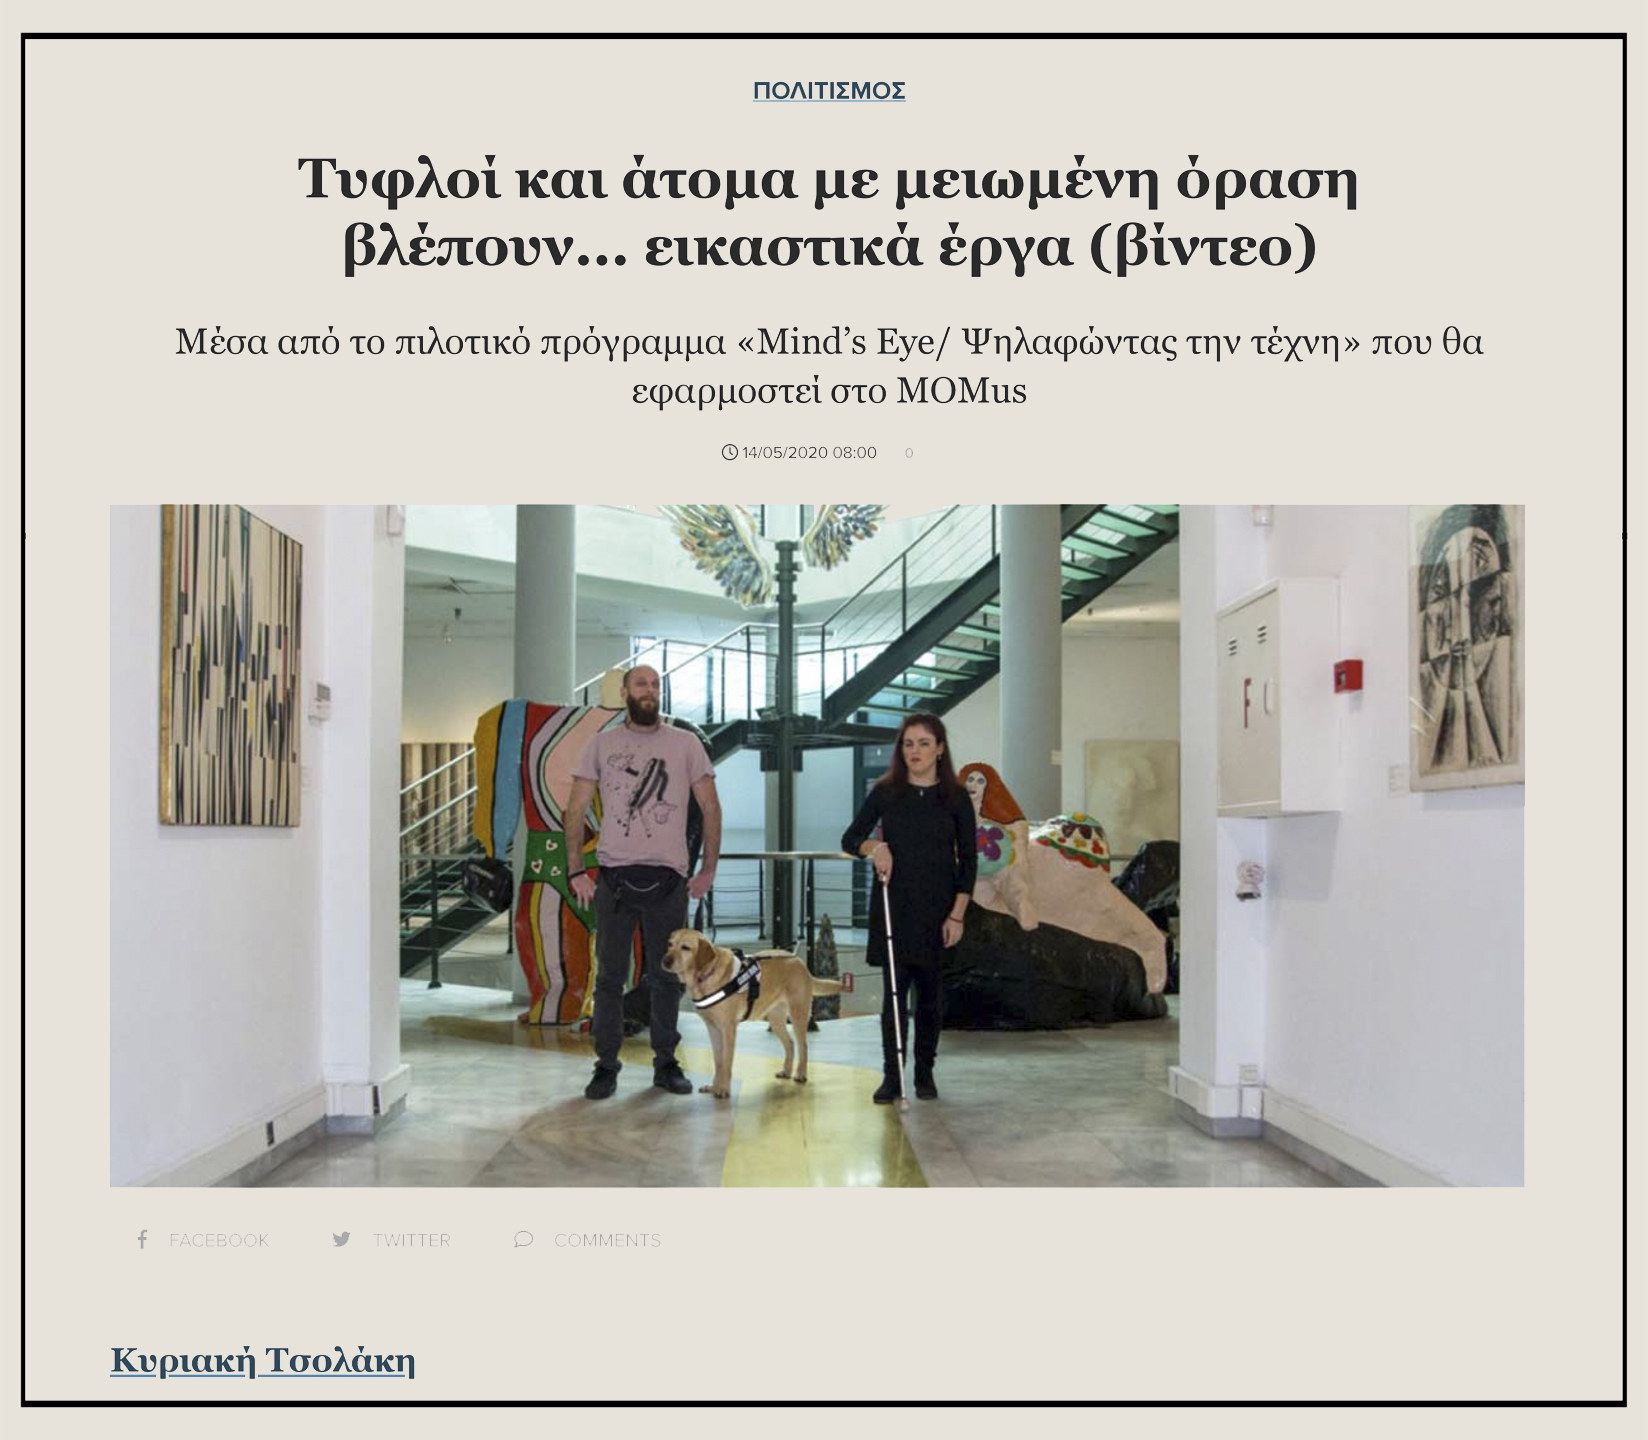 Εικόνα από το δημοσίευμα στην εφημερίδα "Μακεδονία" από την Κυριακή Τσολάκη. Φωτογραφία από το ισόγειο της Αίθουσας Αλέξανδρου Ιόλα του MOMus-Μουσείου Σύγχρονης Τέχνης στην οποία εμφανίζονται η Φανή Τσικούρα και ο Θανάσης Σιδέρης με τη Φρίντα-σκύλο οδηγό μέσα στη συλλογή έργων όπου εφαρμόζεται το πρόγραμμα Mind’s Eye. Η Φανή και ο Θανάσης φαίνεται να κινούνται στο χώρο της συλλογής του μουσείου με φόντο τα έργα της συλλογής: Ψηλά διακρίνεται το έργο Φτερά του Παύλου Διονυσόπουλου, πίσω από τη Φανή και το Θανάση διακρίνουμε τμήμα από τα γλυπτά Αδάμ και Εύα της Νίκι ντε Σαντ Φάλ ενώ στο διάδρομο μπροστά από τους εικονιζόμενους στους πλαϊνούς τοίχους μπορούμε να διακρίνουμε το έργο Σύνθεση του Βίκτωρ Μπράουνερ και έργο του Ρομπέρτο Κρίπα.